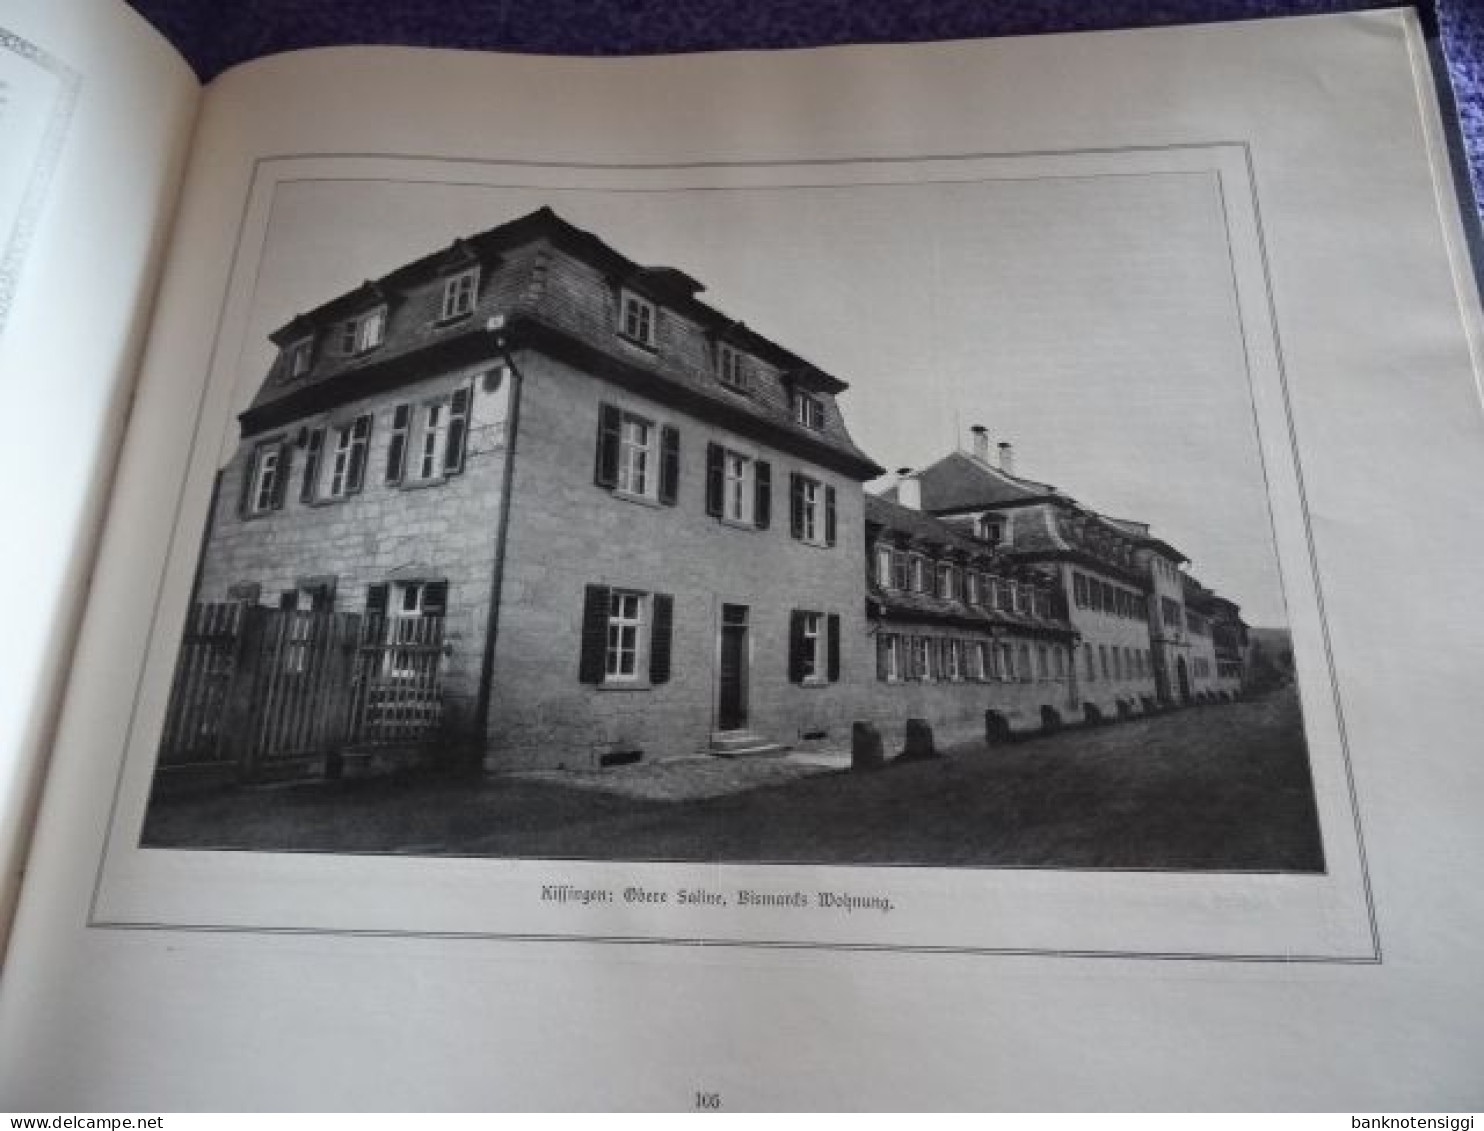 b1 Buch BISMARK "Das Jahrhundert der Deutschen Einigung  in Wort und Bild  1815 bis 1915